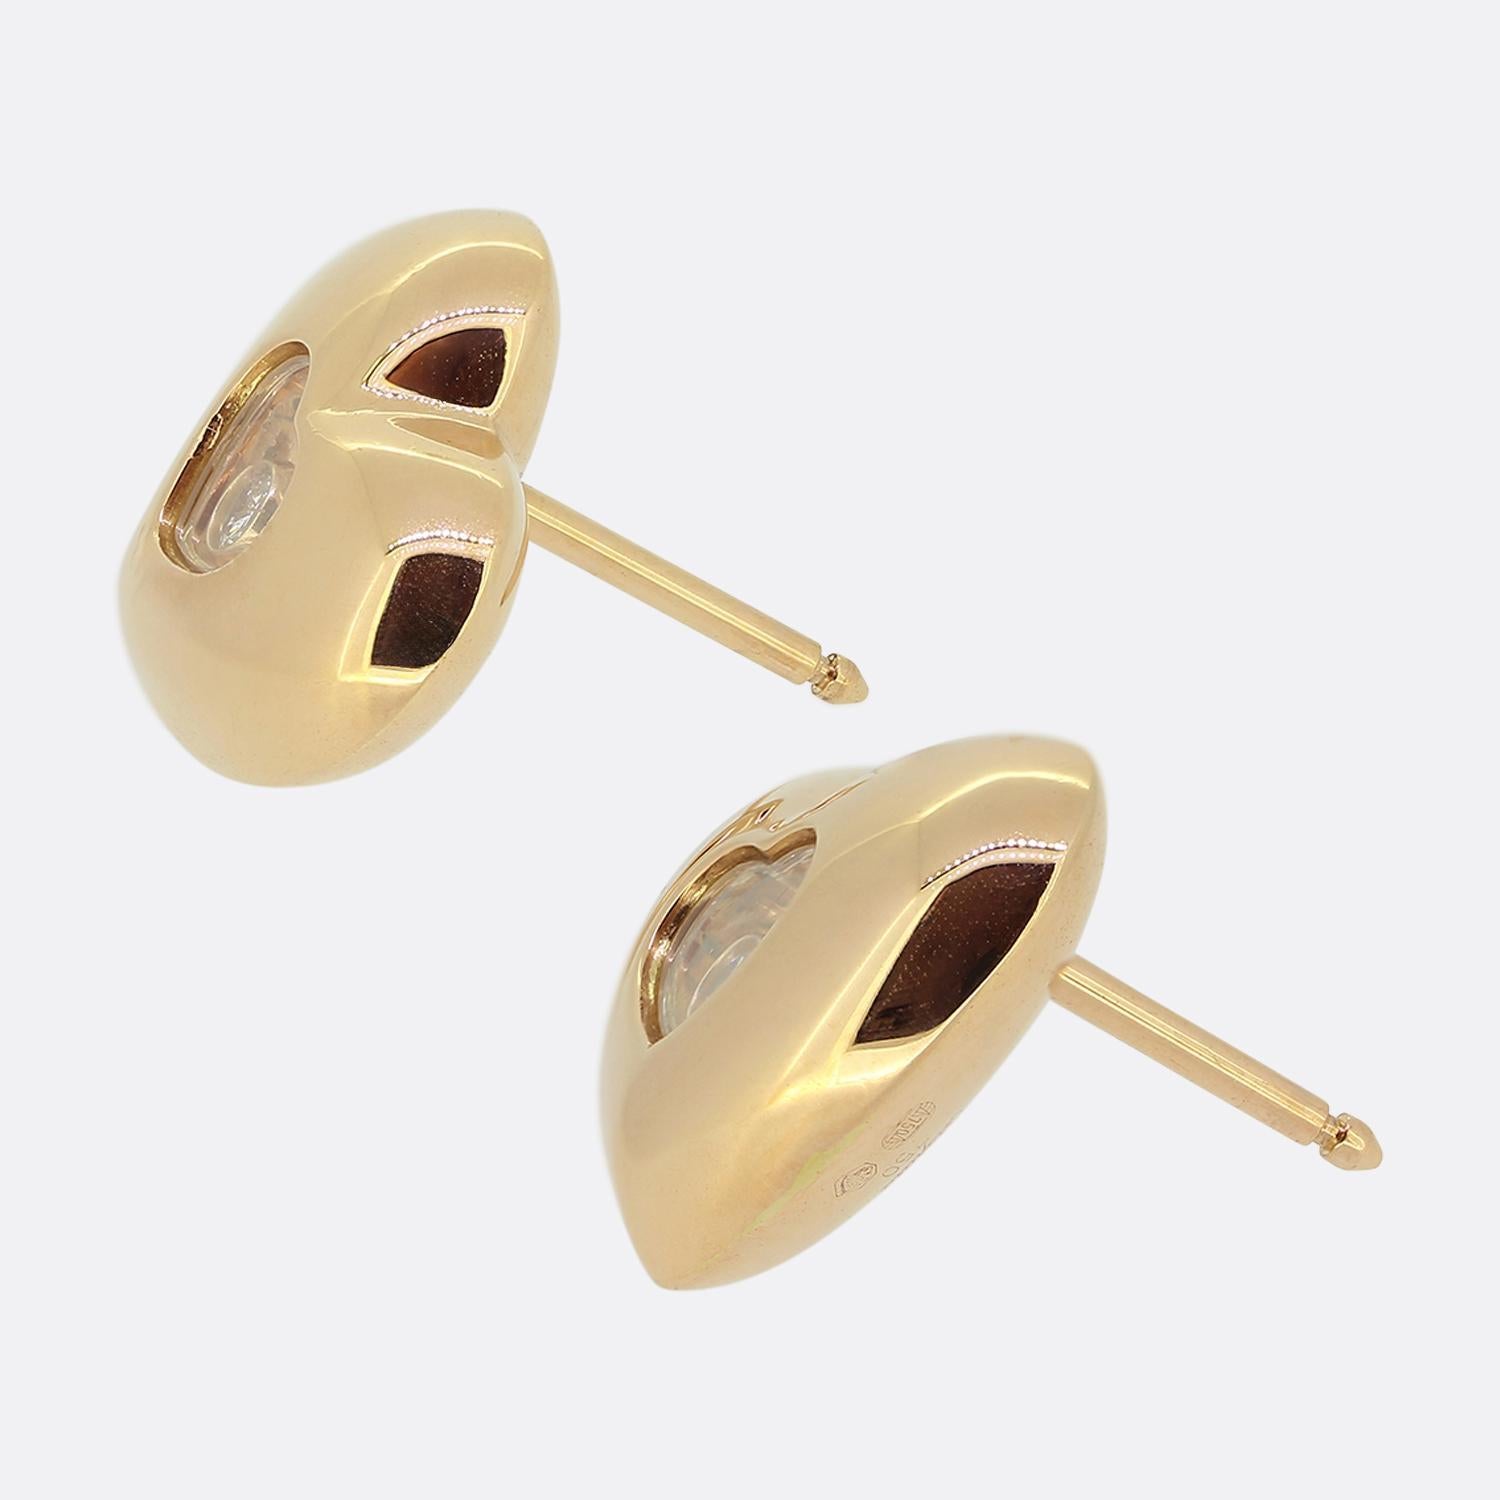 Voici une paire de boucles d'oreilles en or rose 18ct de la collection 